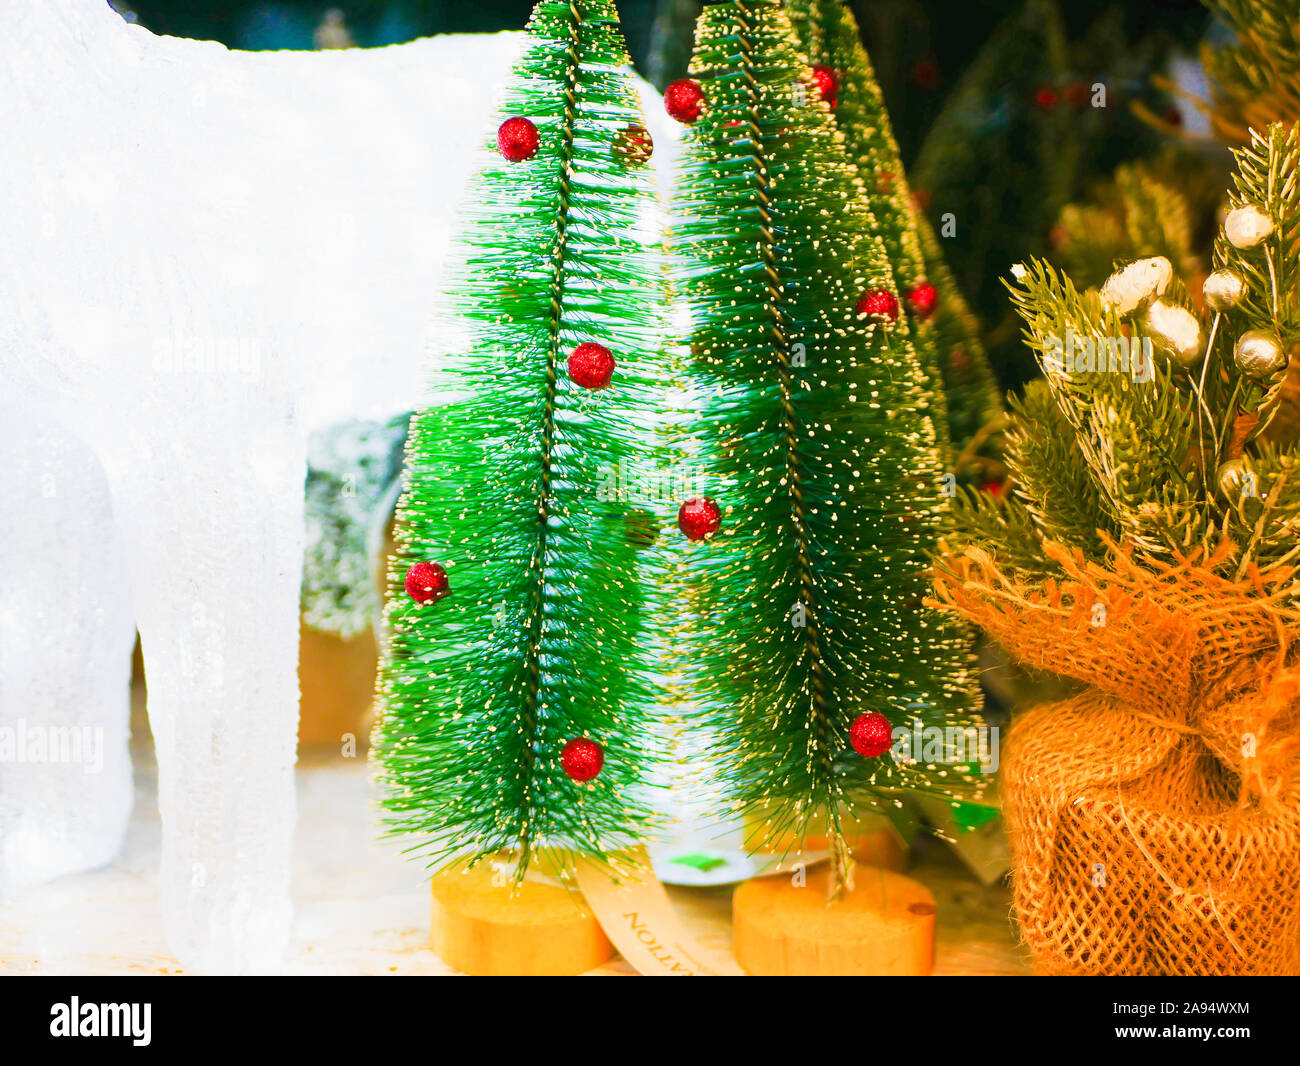 Sustitución de un auténtico árbol de Navidad. Los árboles de Navidad artificiales. Contra la tala de árboles de Navidad. Foto de stock